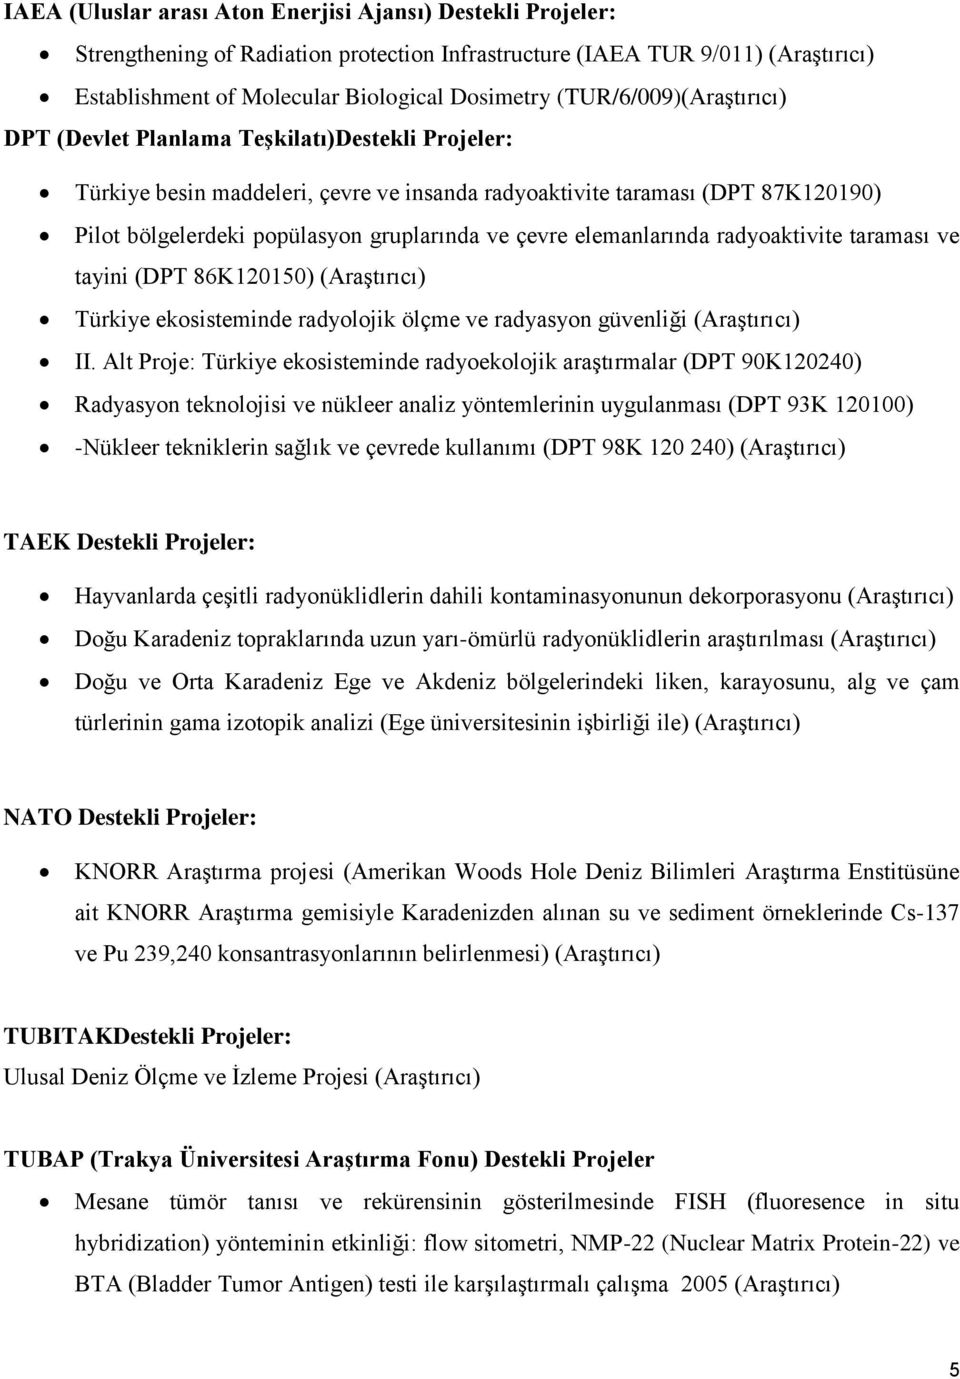 çevre elemanlarında radyoaktivite taraması ve tayini (DPT 86K120150) (Araştırıcı) Türkiye ekosisteminde radyolojik ölçme ve radyasyon güvenliği (Araştırıcı) II.